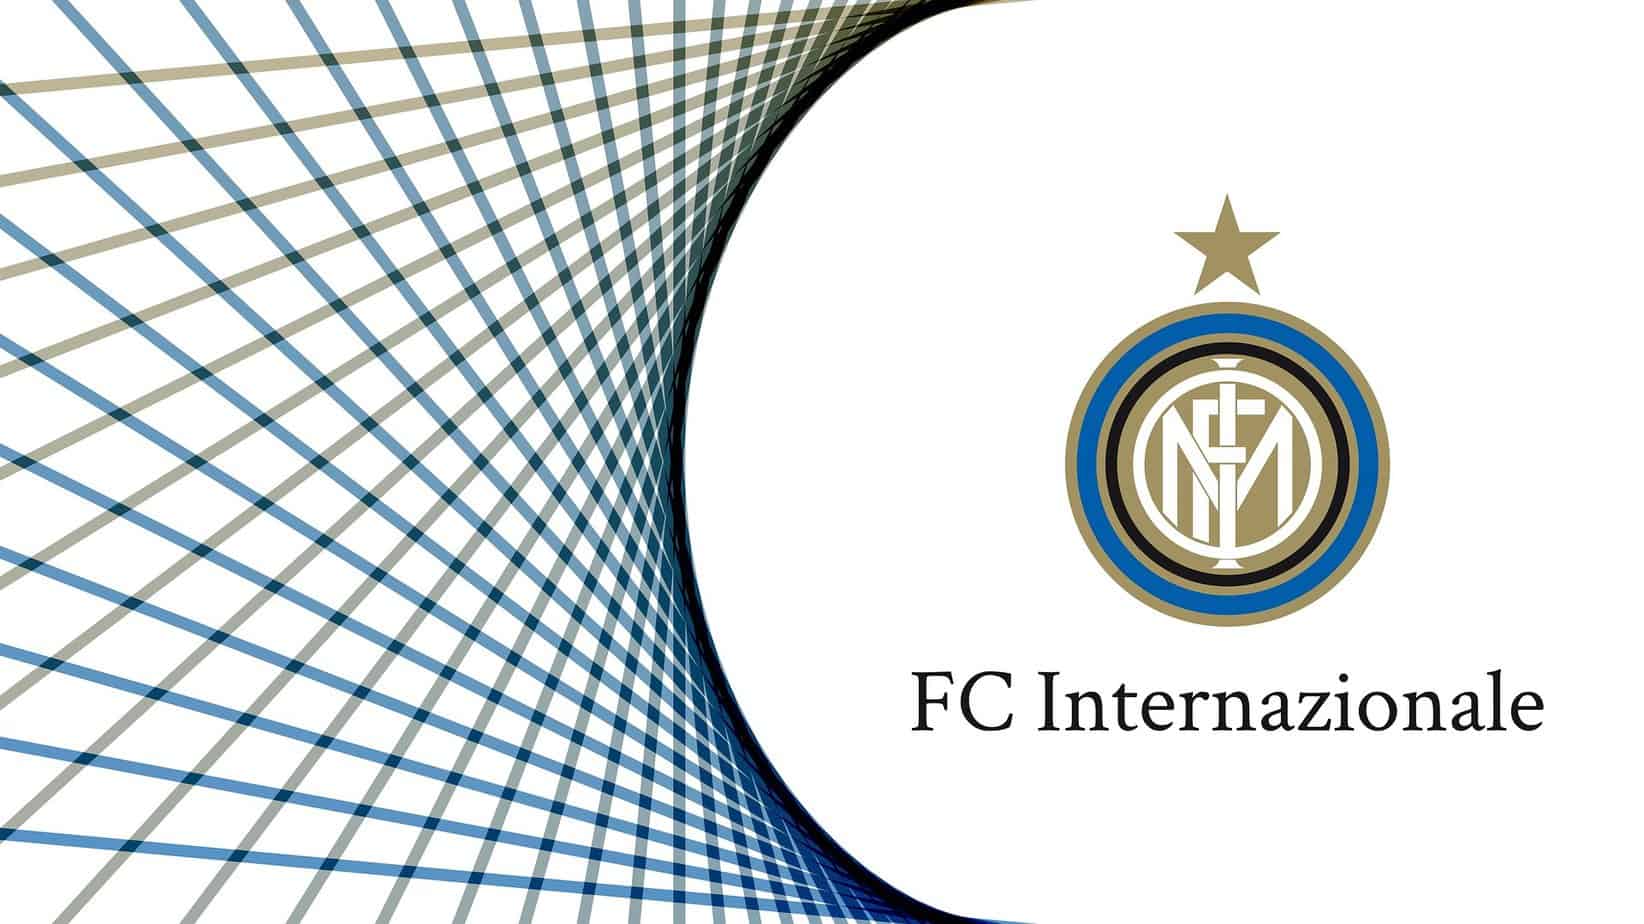 Le départ fulgurant de l’Inter Milan a stupéfié l’AC Milan en demi-finale de la Ligue des champions.